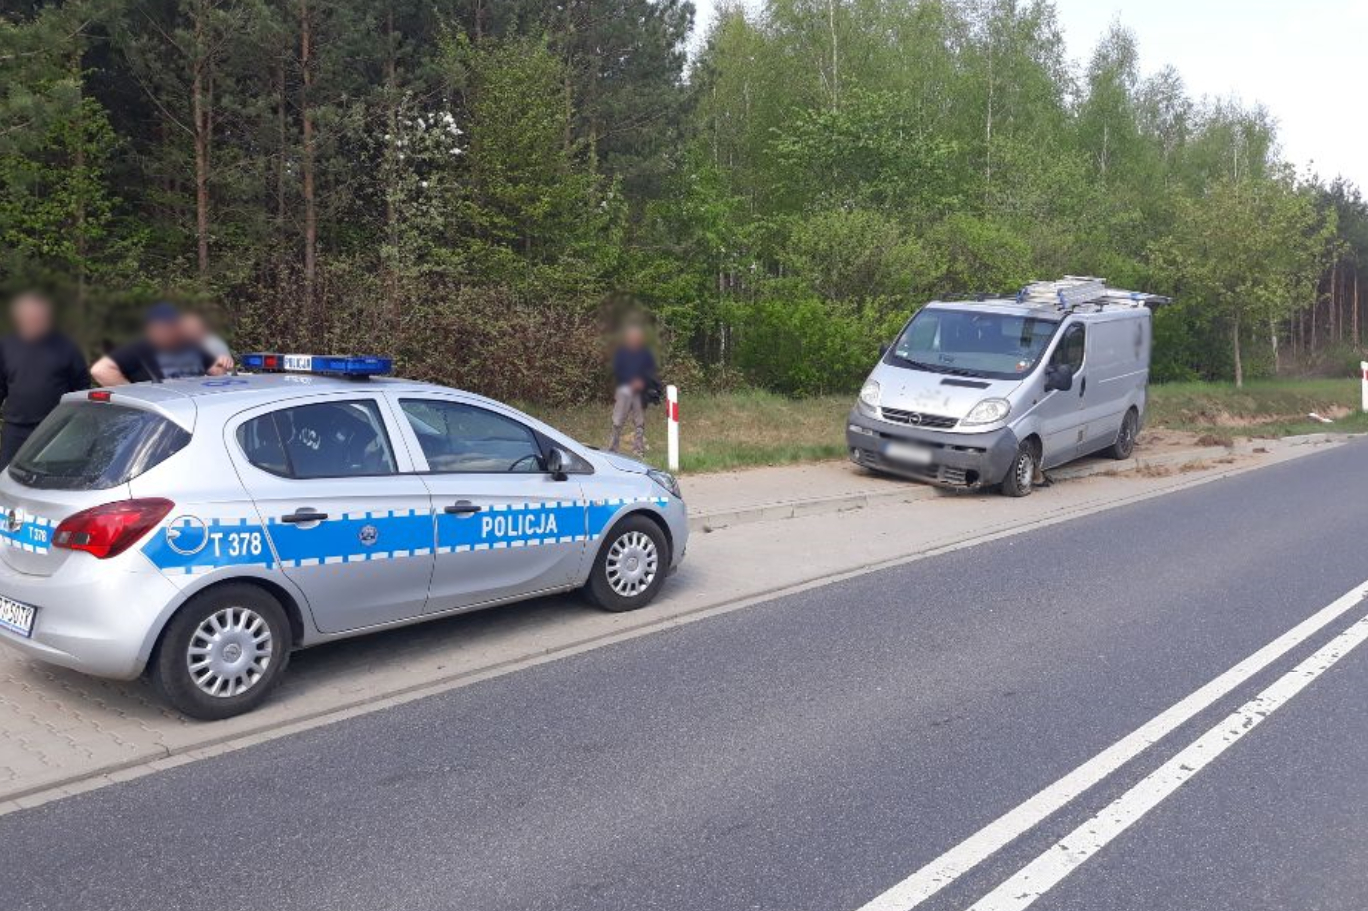 Na poboczu drogi stoi policyjny oznakowany radiowóz marki Opel oraz uszkodzony dostawczy opel koloru srebrnego